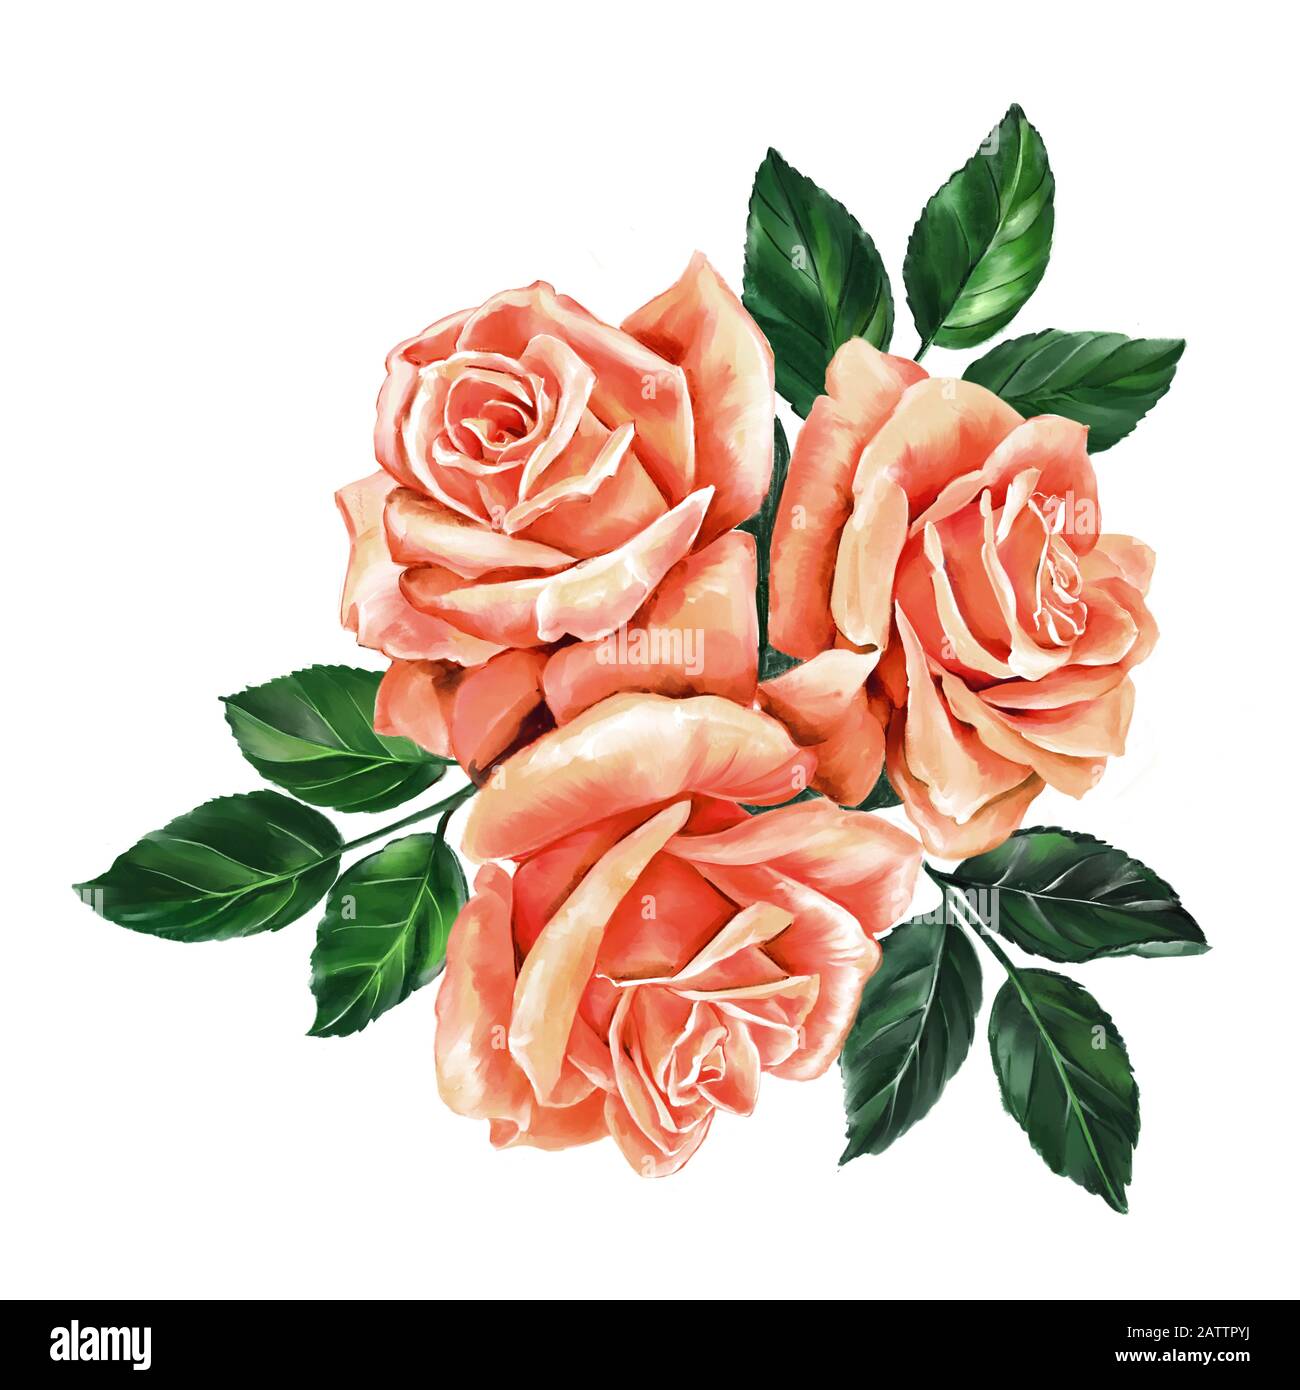 fleur rose rose avec feuilles vertes, illustration d'art peinte avec des aquarelles isolées sur fond blanc. Banque D'Images